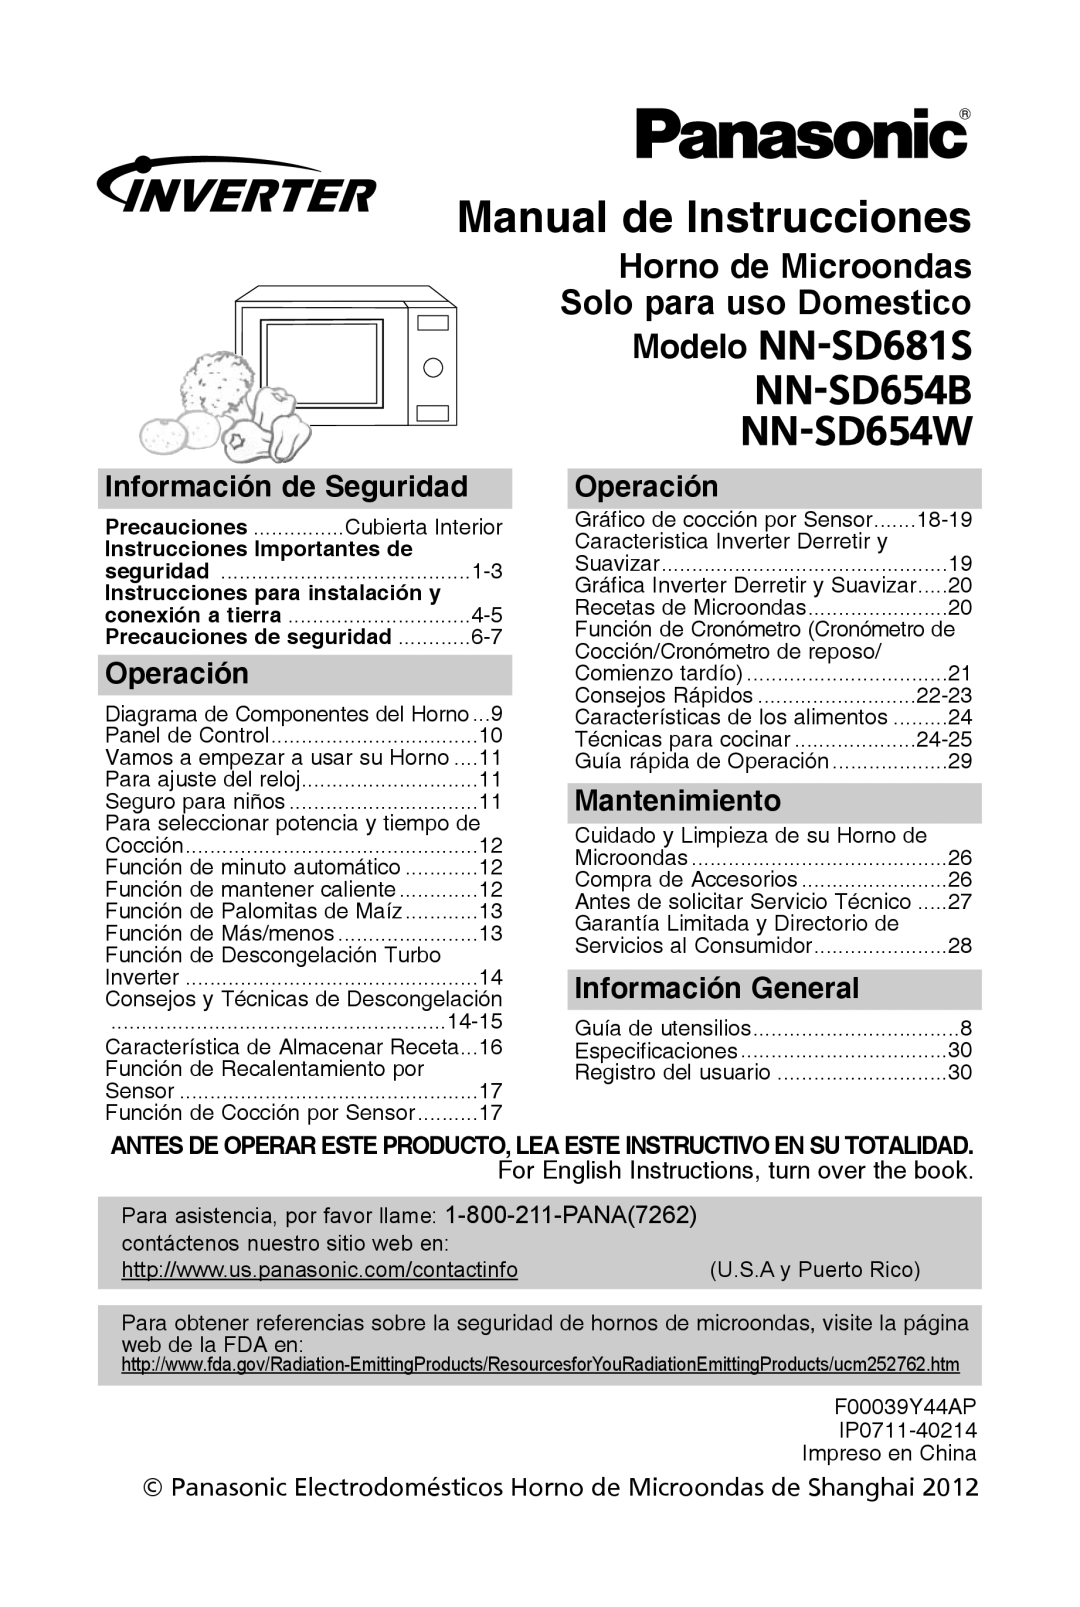 Panasonic NN-SD654W Manual de instrucciones, horno de Microondas, información de seguridad, operación, Mantenimiento 